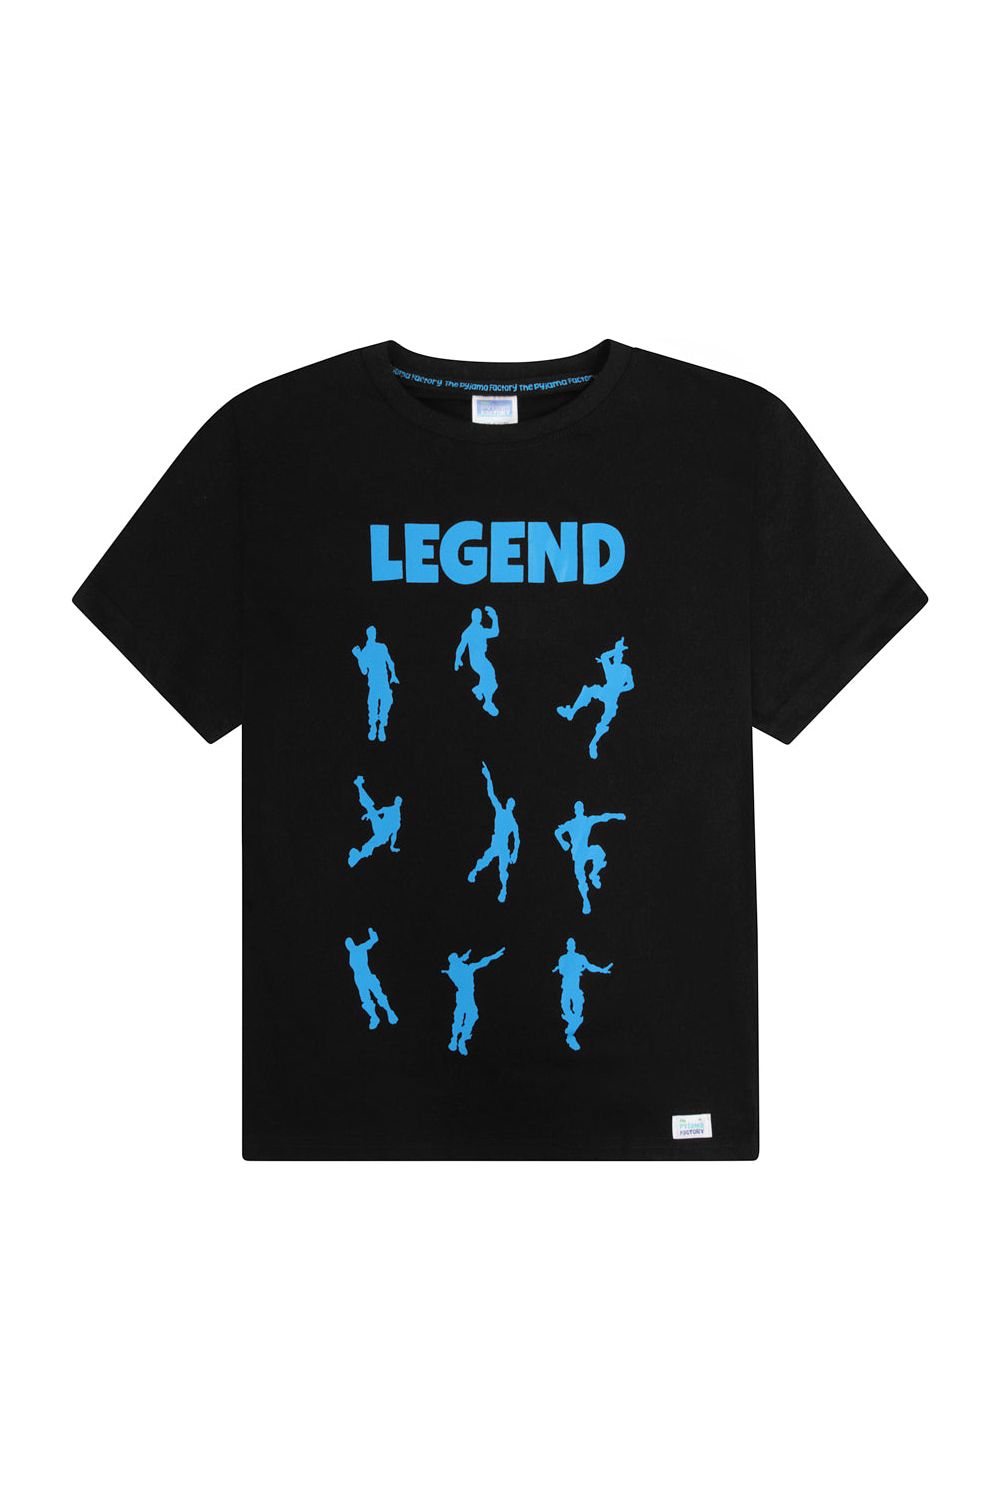 Legend Emote Dance Gaming Blue Short Pyjamas - Pyjamas.com